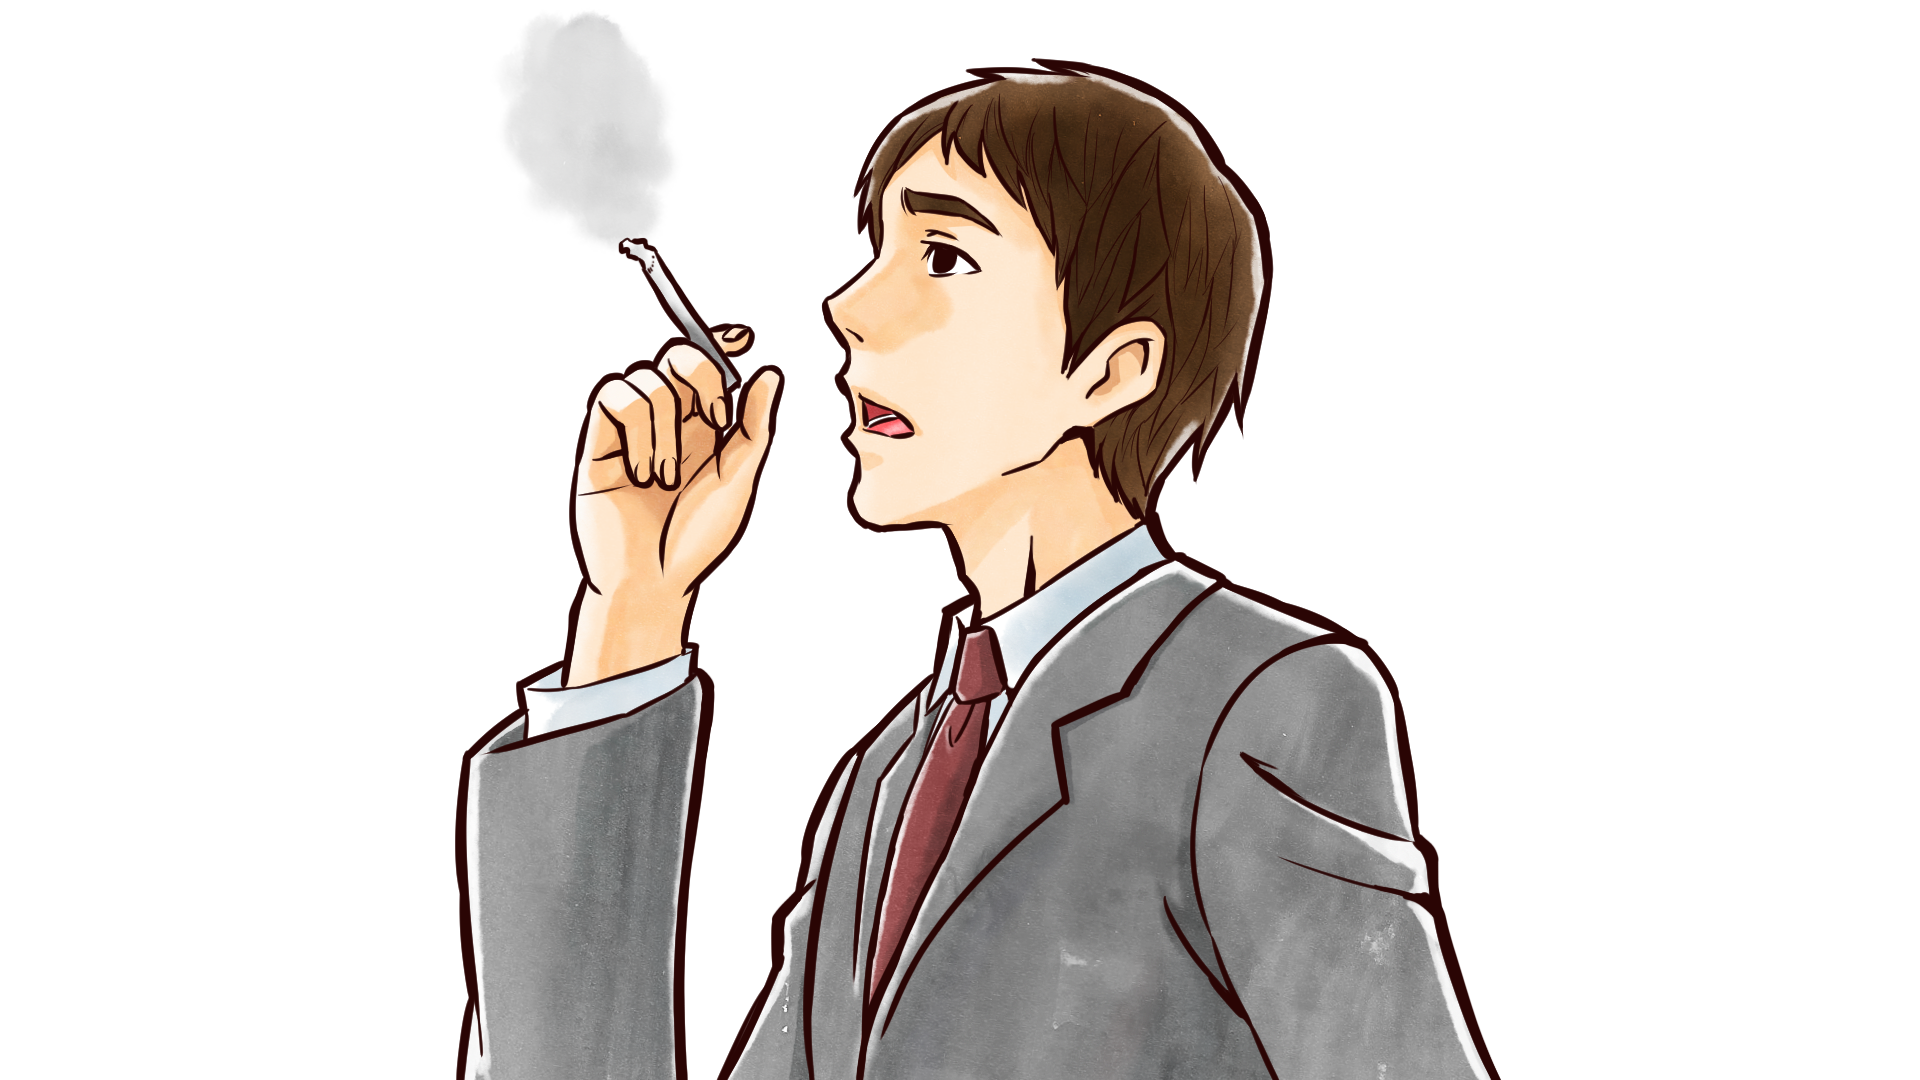 タバコを吸うスーツ姿の上司 社会人男性のフリーイラスト画像素材 商用無料 アイキャッチャー